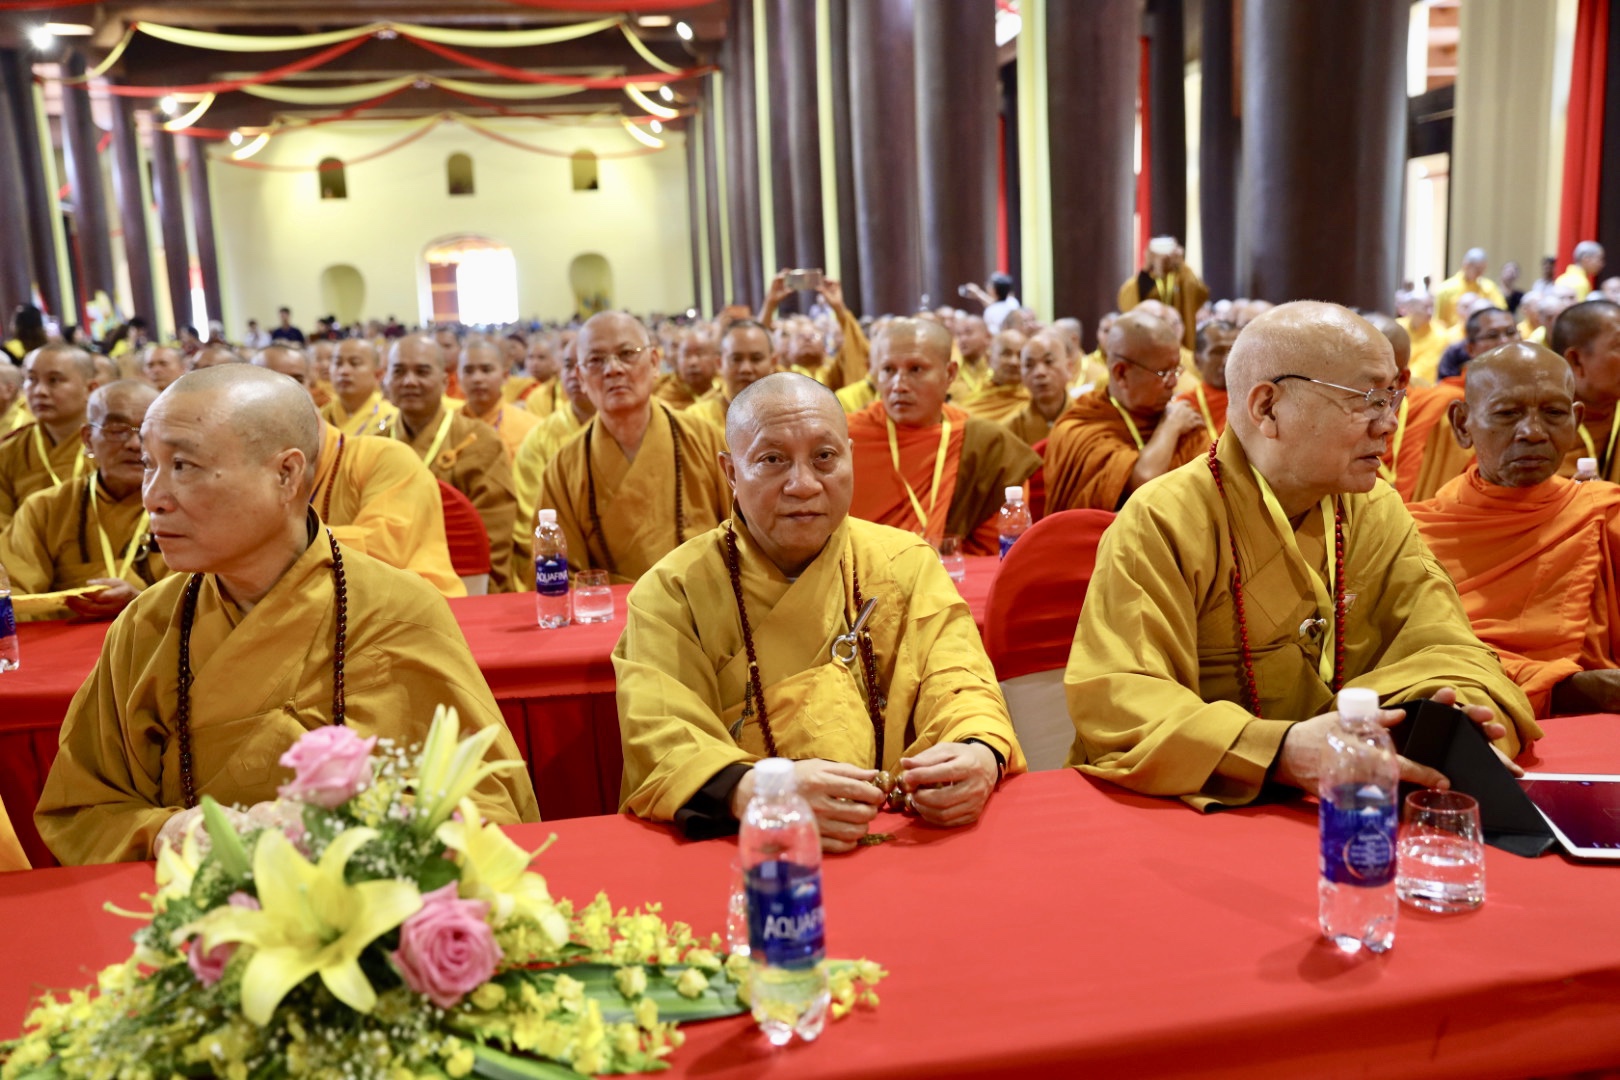 Video: Khai mạc Hội thảo Quốc tế Trần Nhân Tông và Phật giáo Trúc Lâm Đặc sắc Tư tưởng Văn hóa 